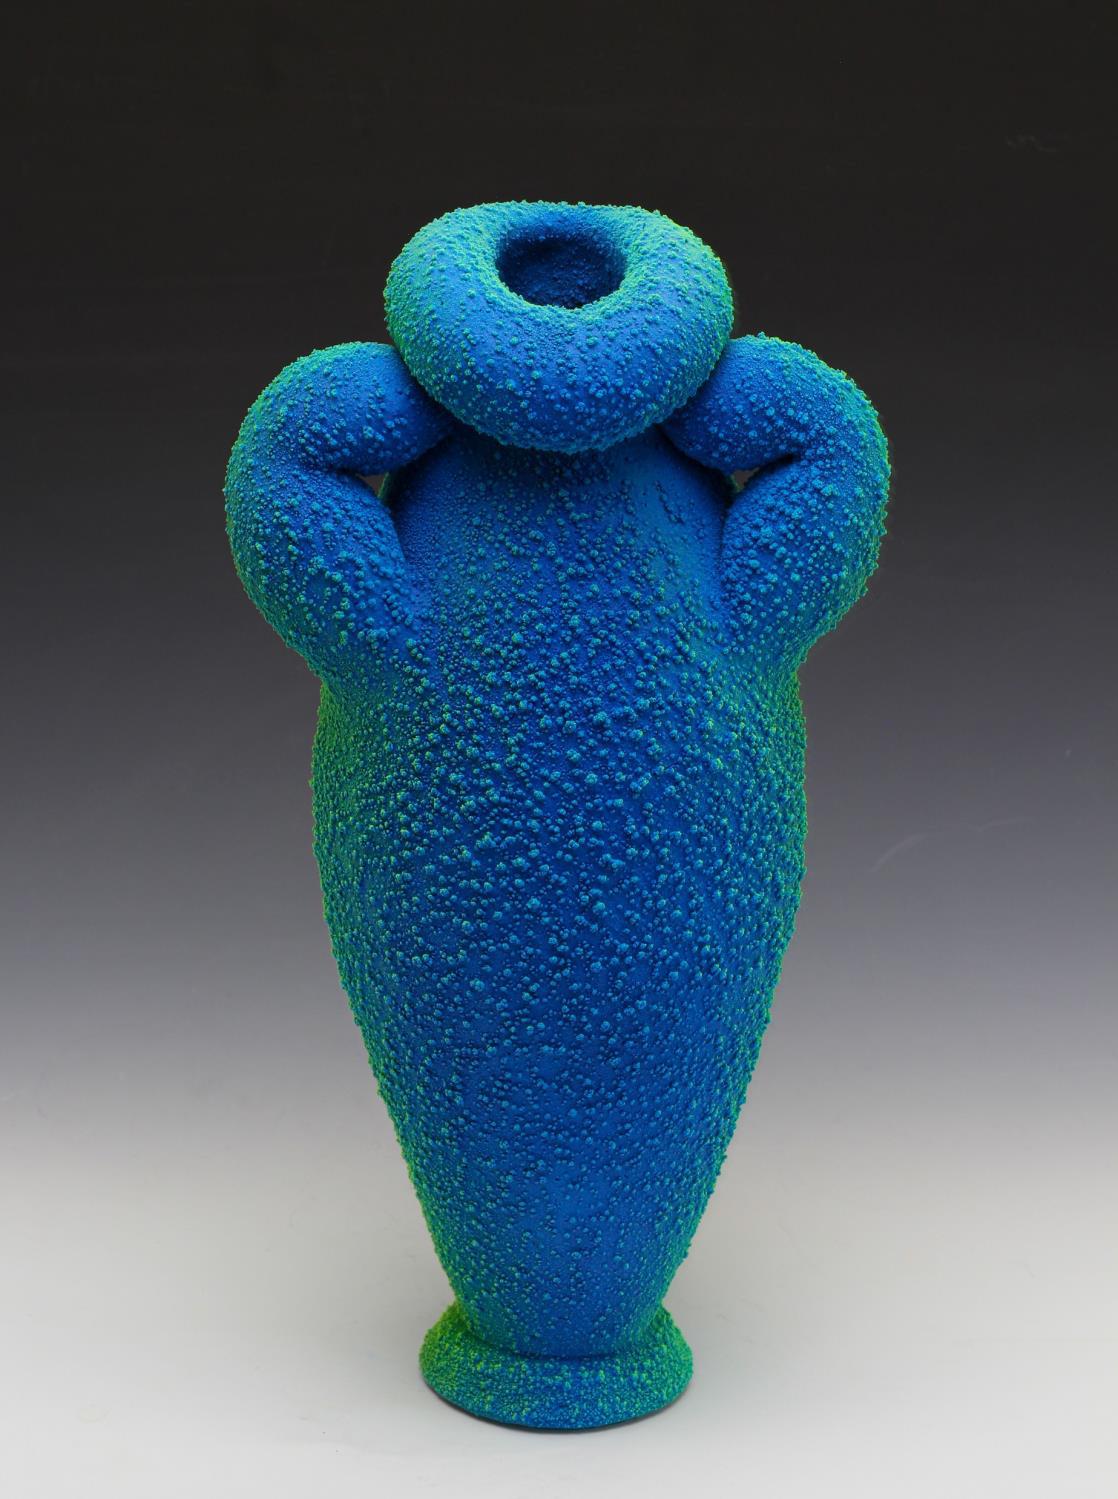 « Blue & Green Amphora 2 », céramique, sculpture, techniques mixtes, grès, plastique 